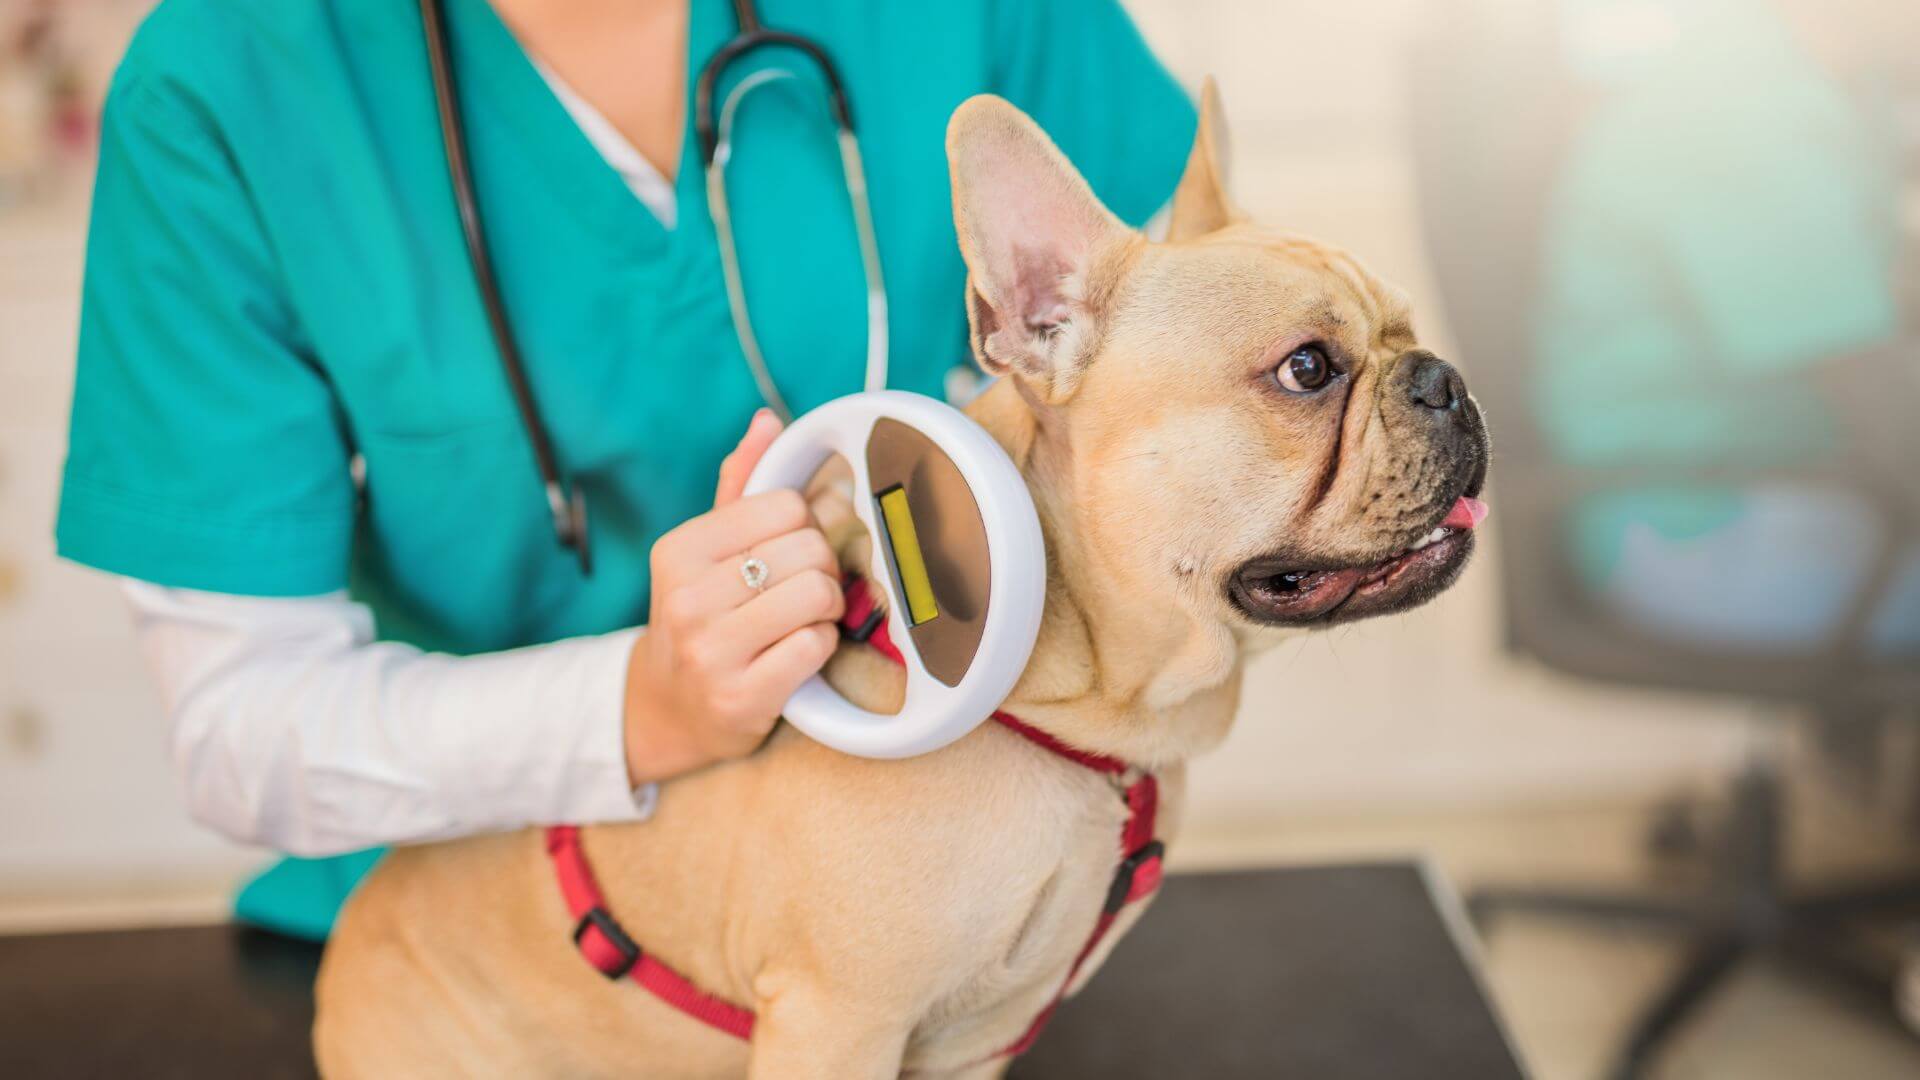 A vet checking pet's microchip